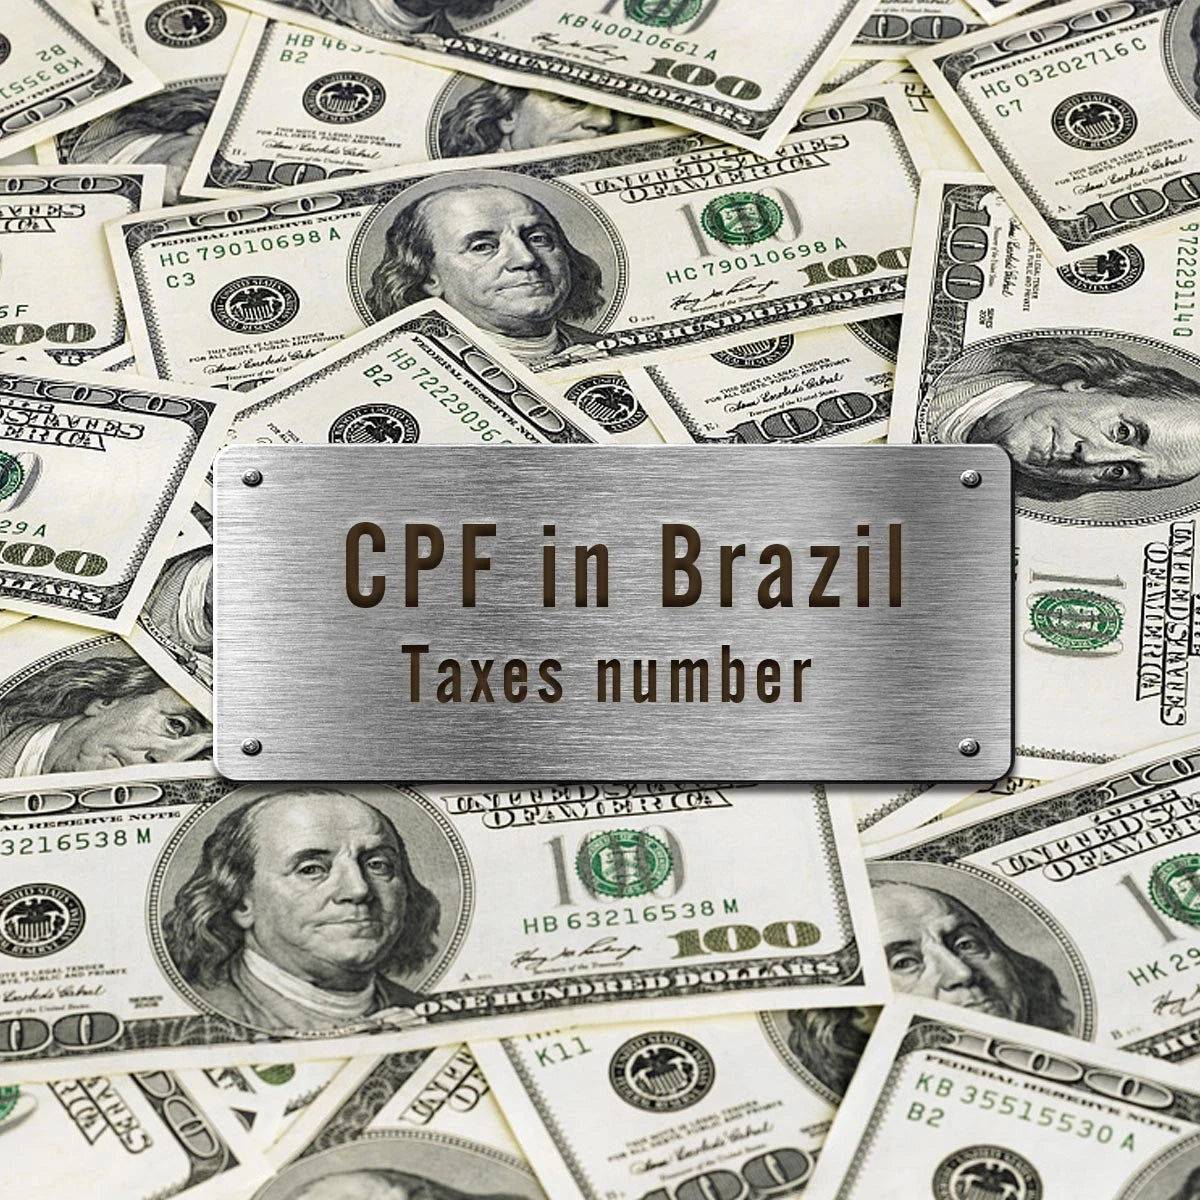 Для всех заказов (Бразилия) требуется идентификационный номер налогоплательщика (CPF).